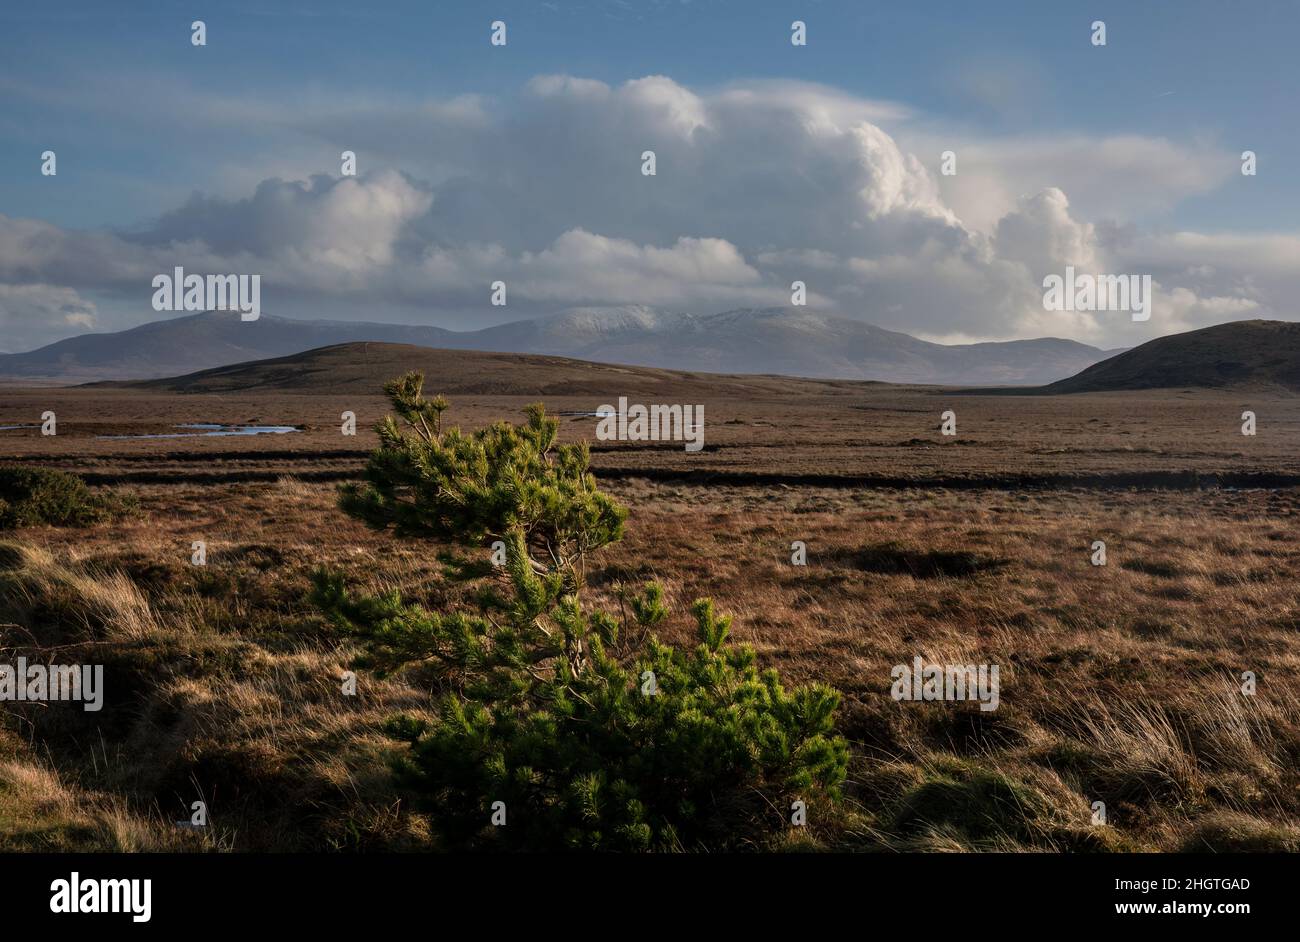 Bogland au bord du parc national Wild Nephin en Irlande.Il est situé sur la côte ouest dans le nord-ouest de Mayo.Il s'étend sur 11,000 hectares. Banque D'Images